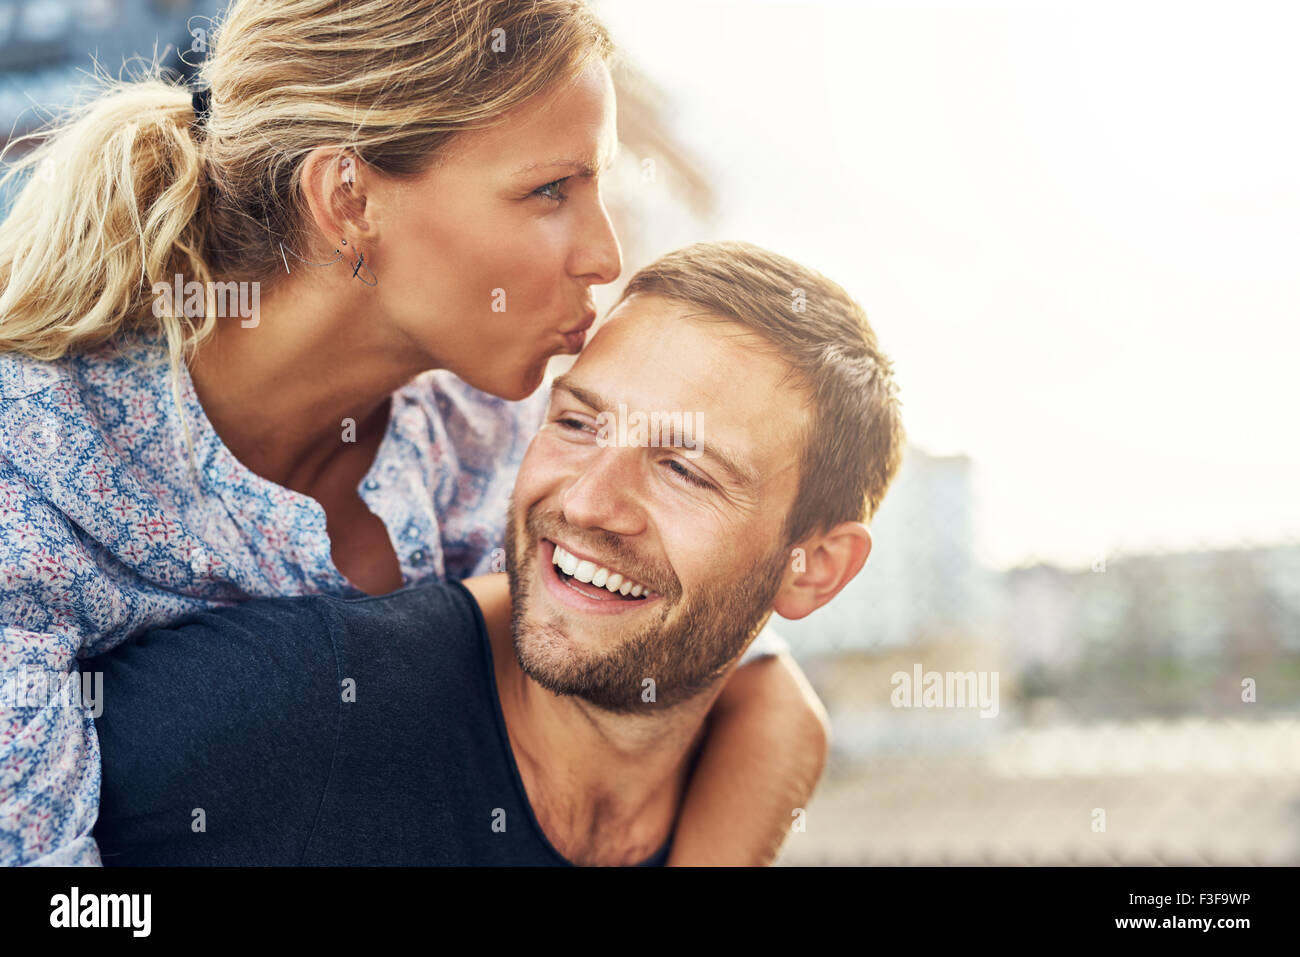 Woman Kissing Man alors qu'il rit, jeune couple Banque D'Images